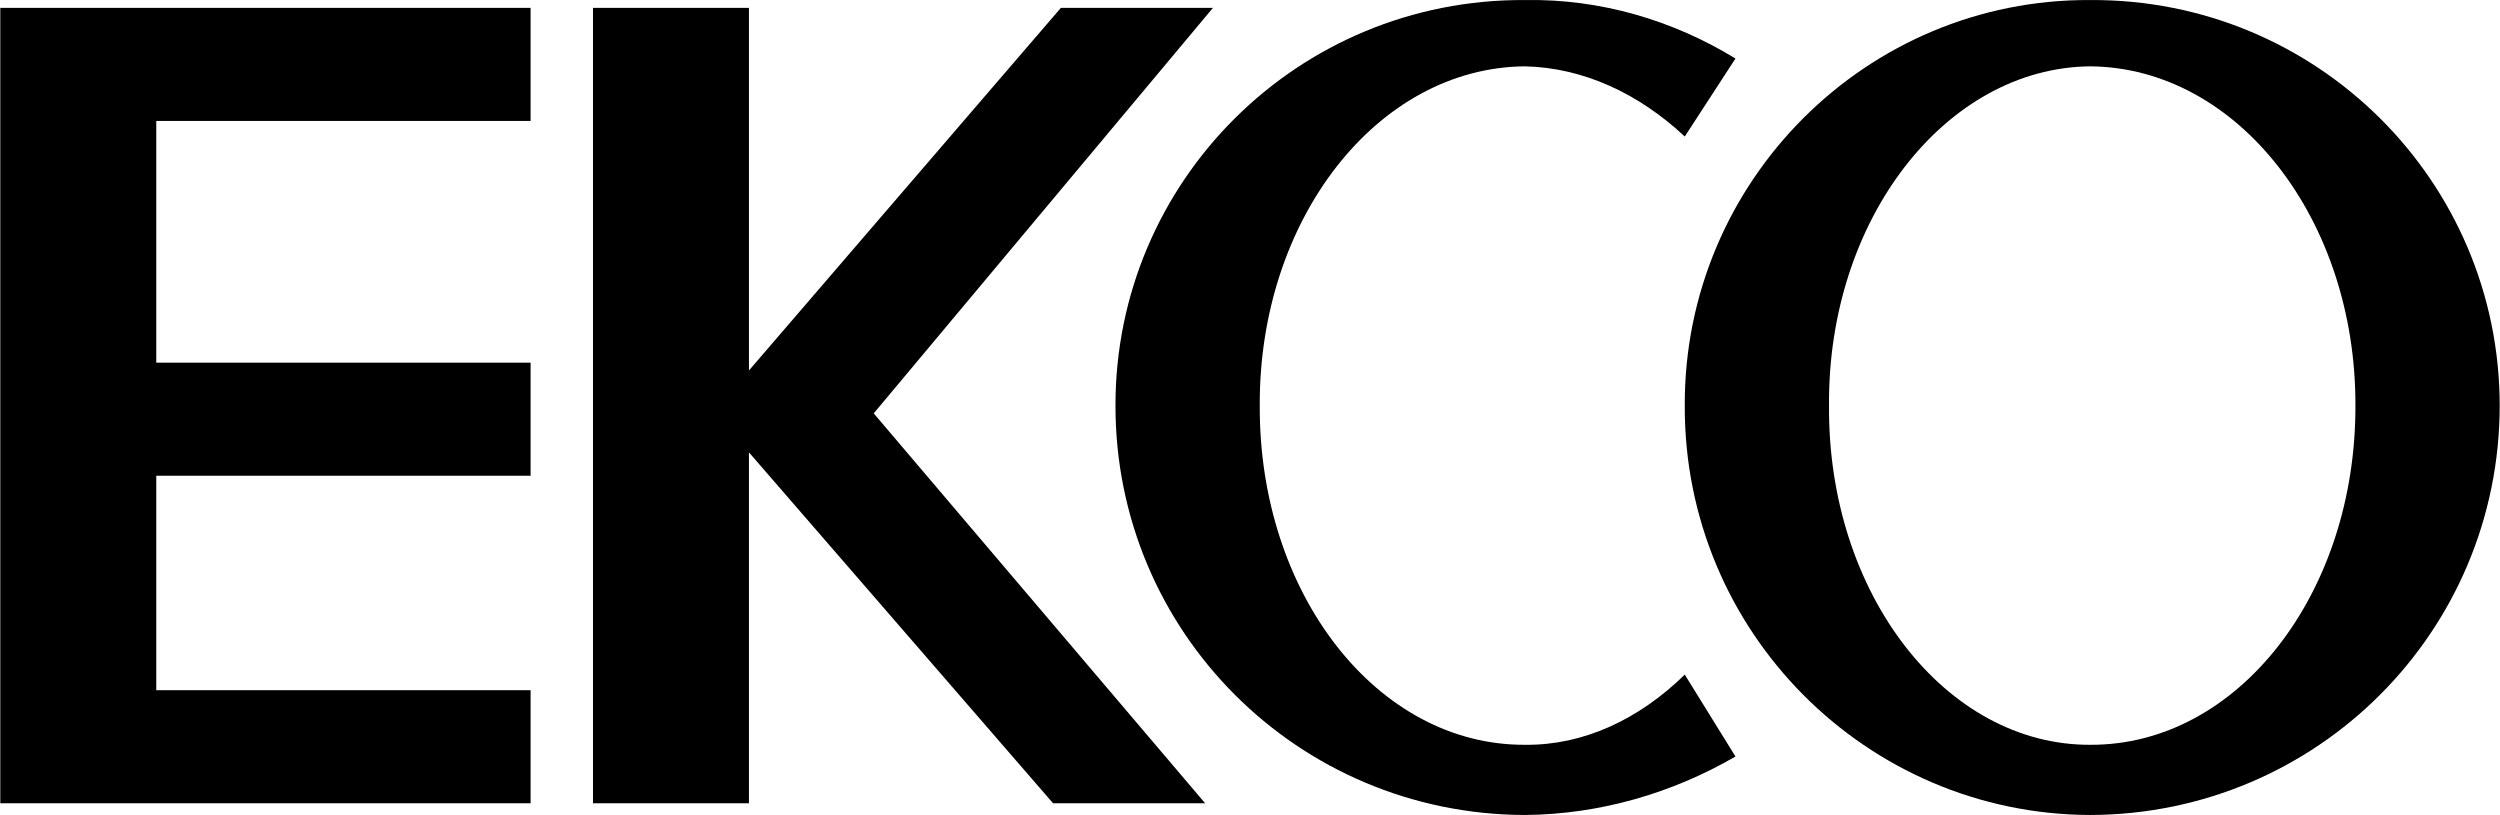 ekco logo